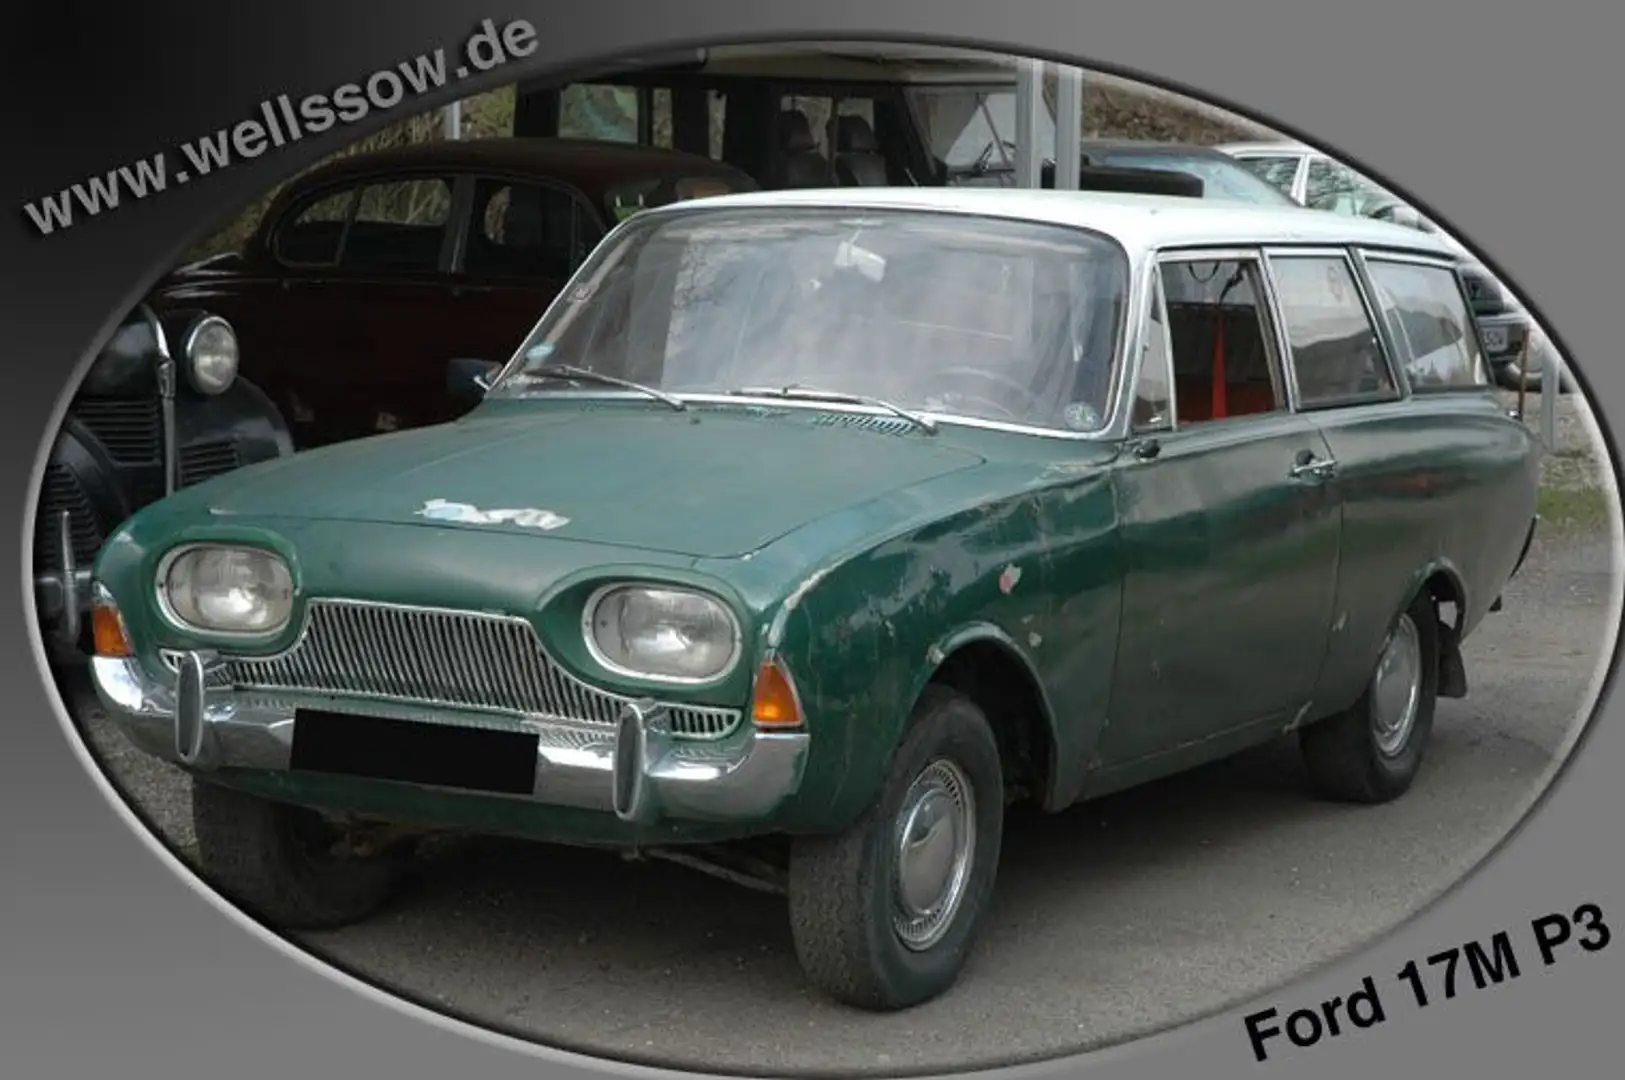 Ford Taunus 17m P3 Kombi Badewanne Scheunenfund Зелений - 1